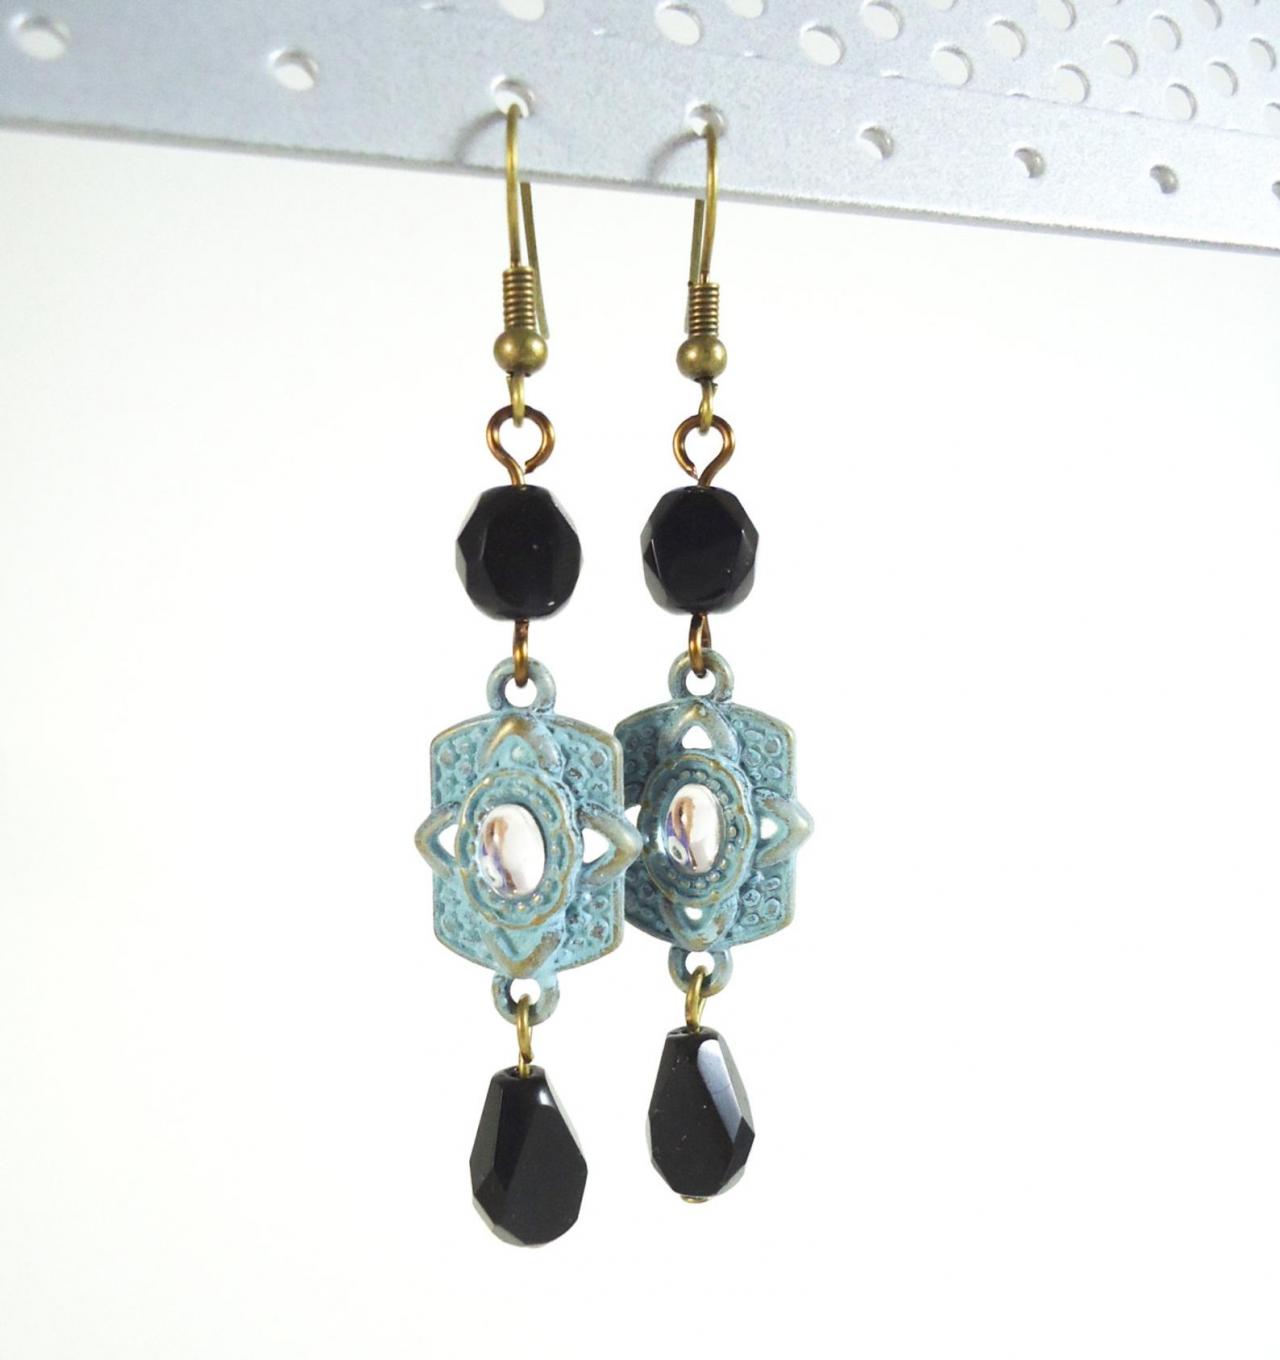 Long Earrings - Gift For Her - Blue Earrings - Black Earrings - Teardrop Earrings - Blue Boho Earrings - Modern Earrings - Modern Jewelry